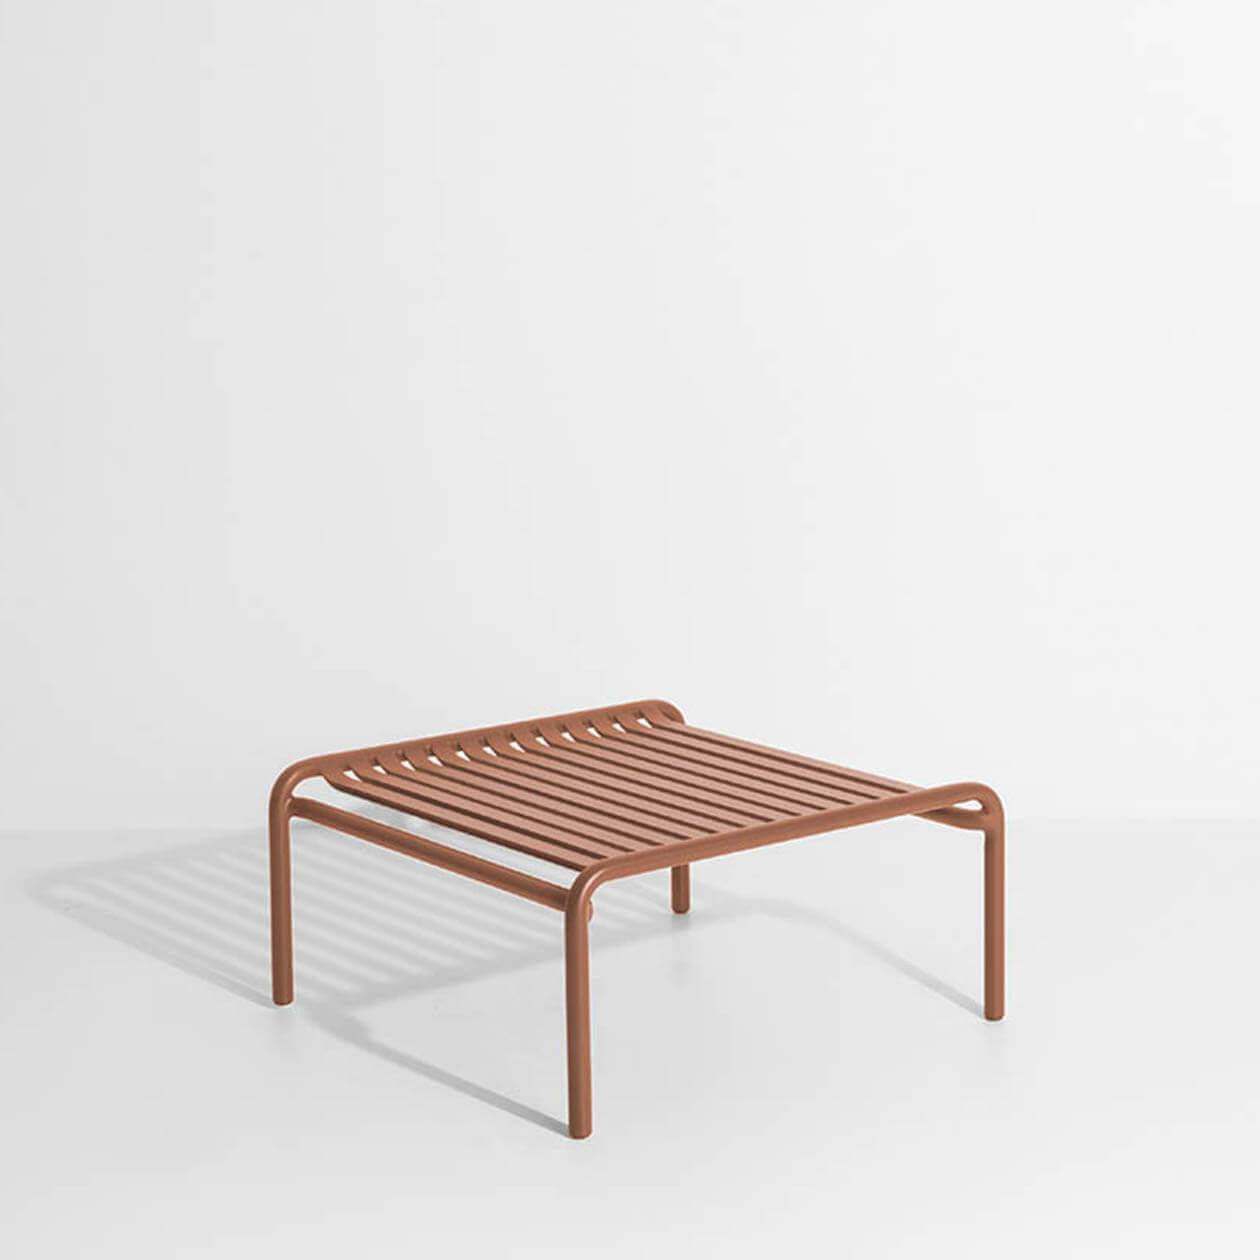 Week-End Coffee Table small in Terracotta präsentiert im Onlineshop von KAQTU Design AG. Beistelltisch Outdoor ist von Petite Friture